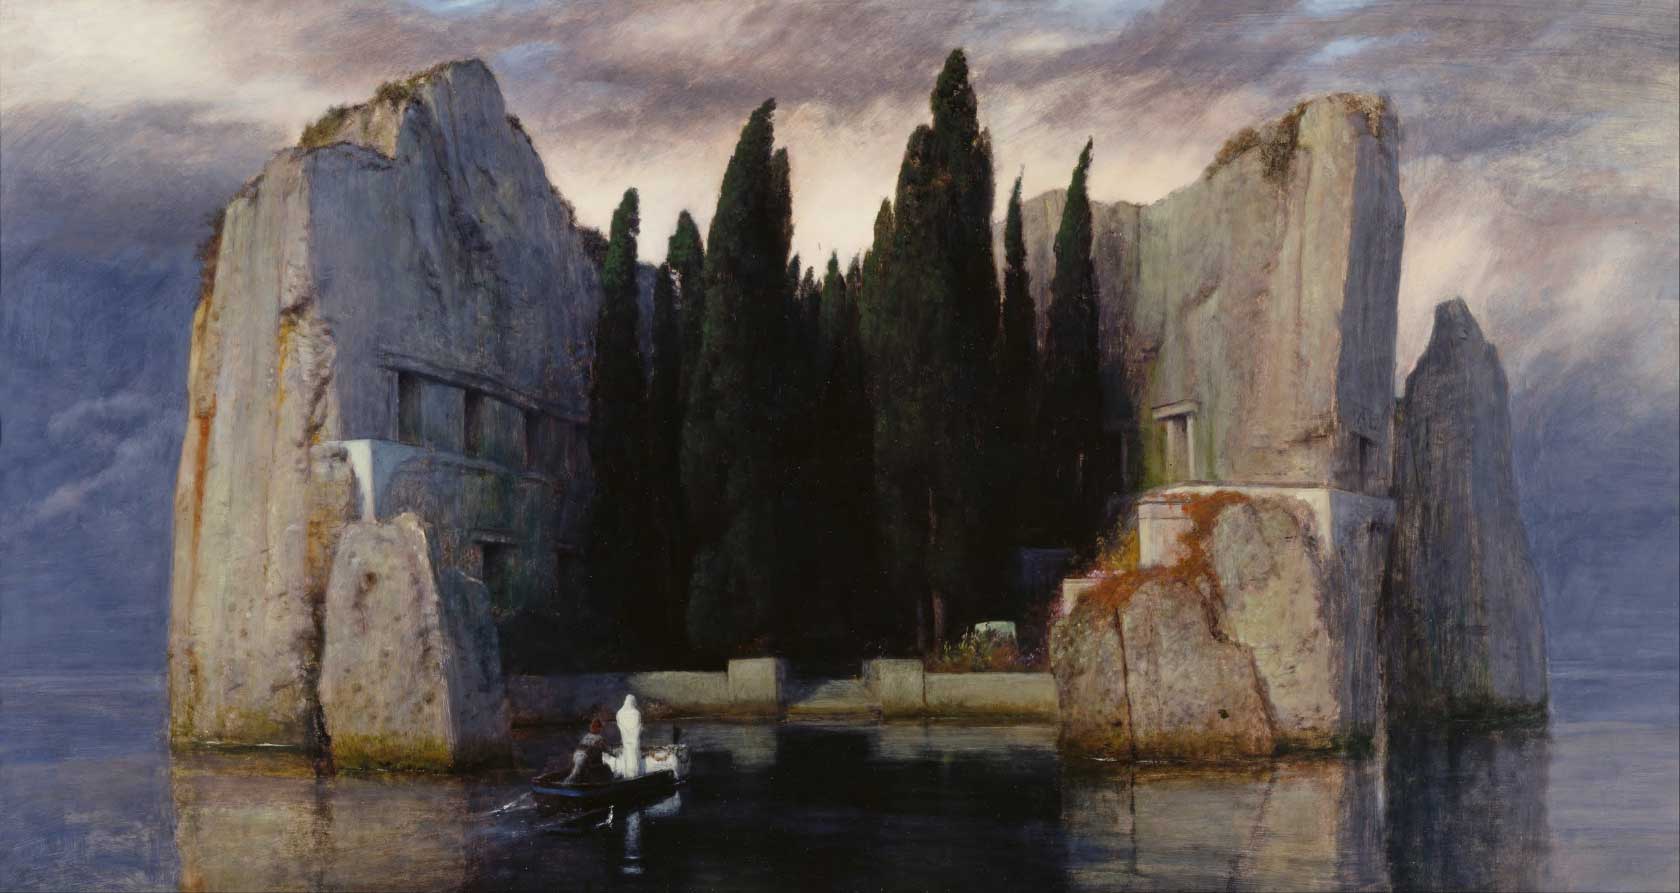 Arnold Böcklin, The Isle of the Dead (1883)